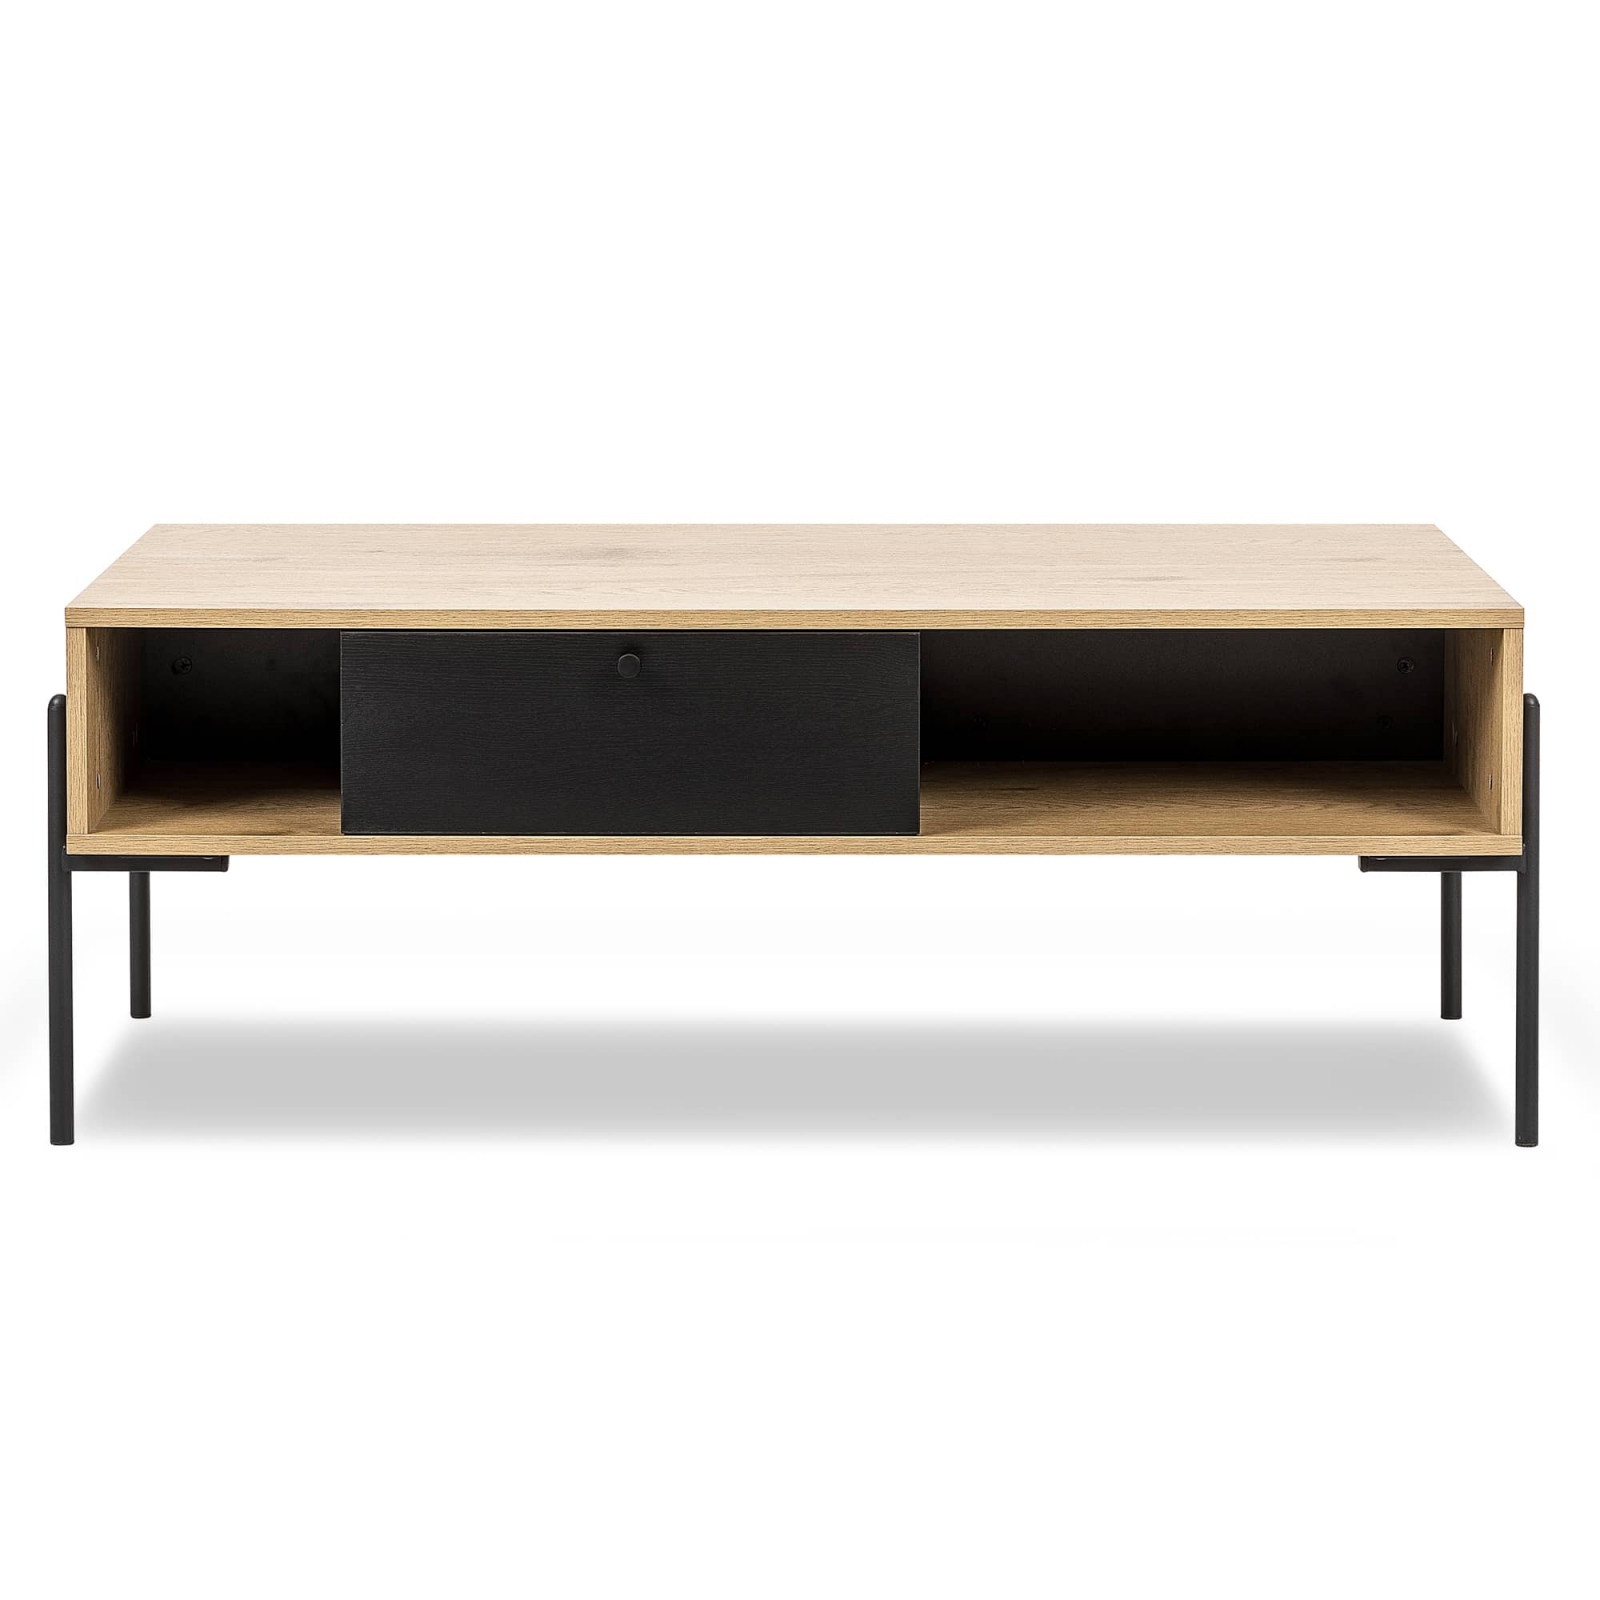 Table basse avec rangement en bois clair et métal noir